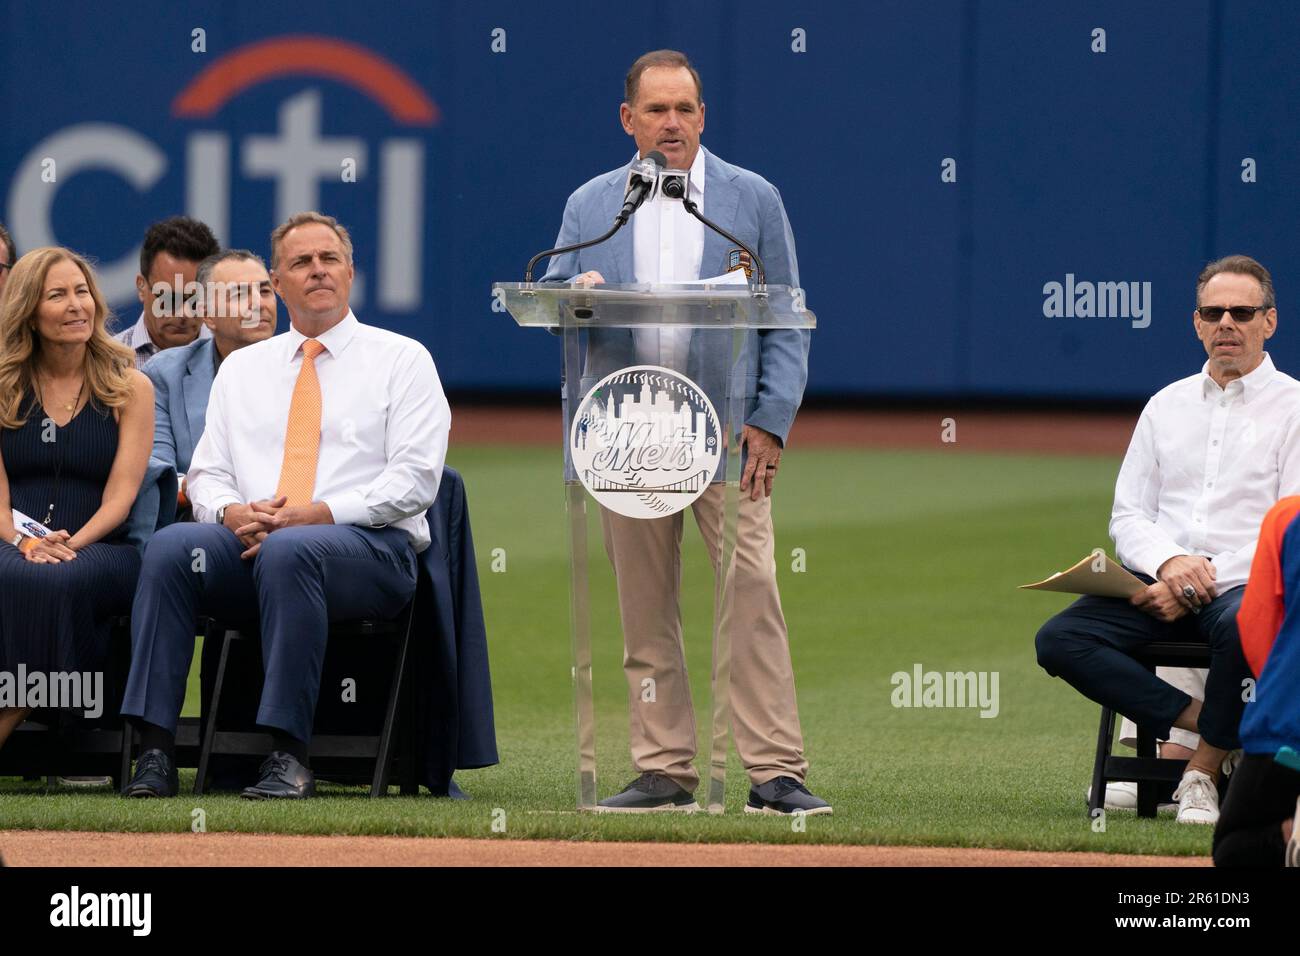 FLUSHING, NY - JUNE 03: Former New York Mets Third Baseman Howard